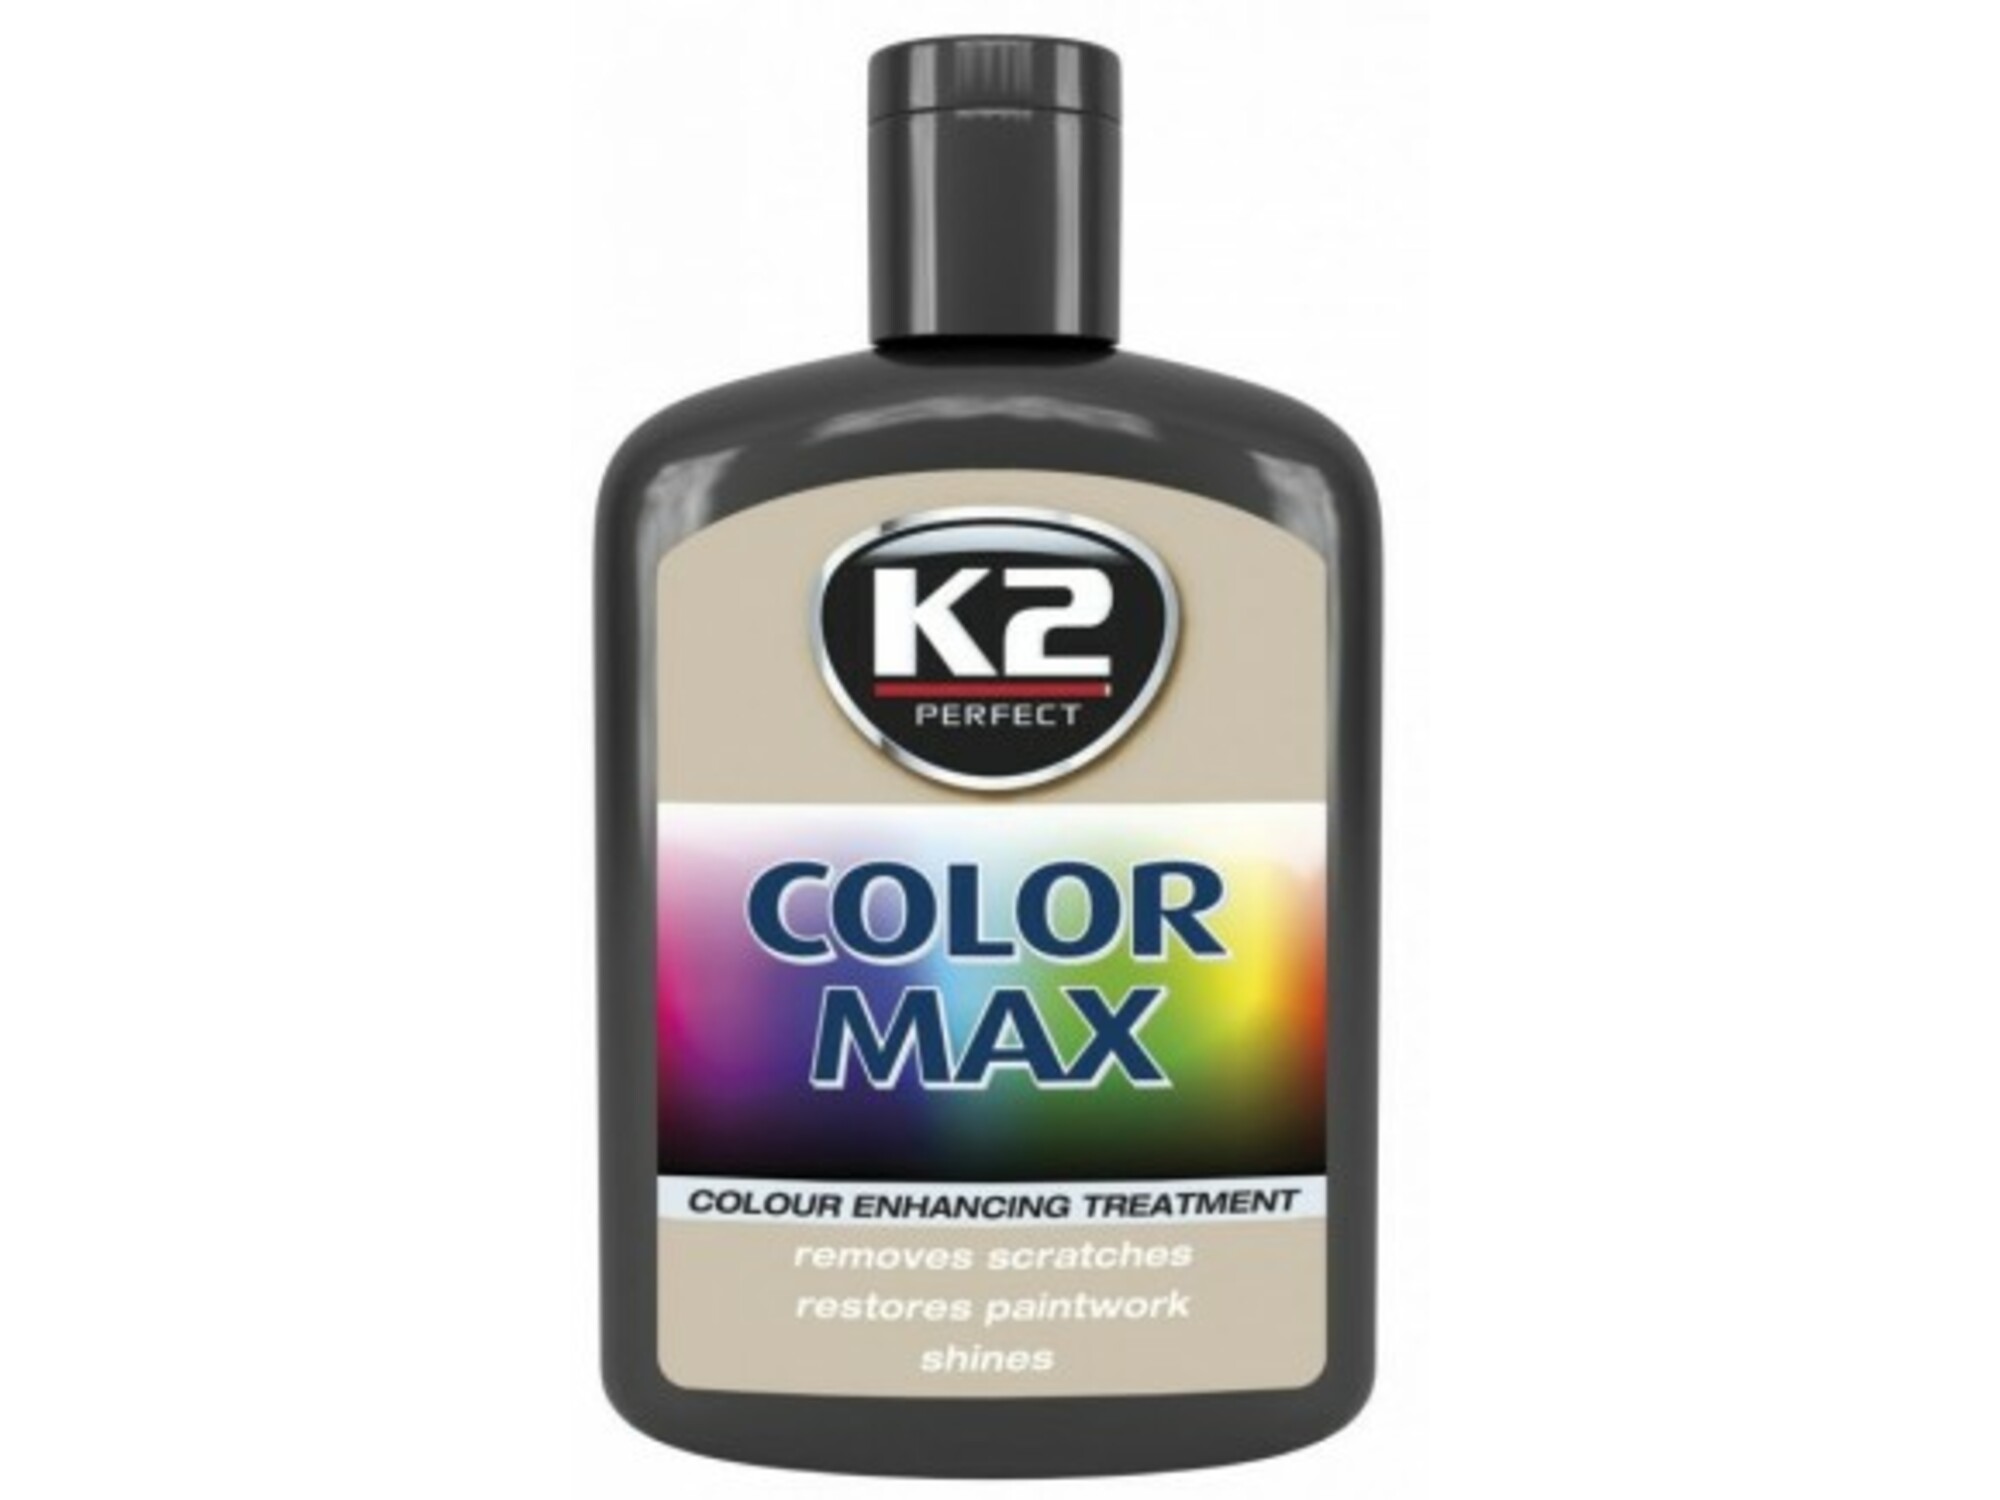 K2 AUTO CARE polirna pasta K2 Color Max 200ml - Črna